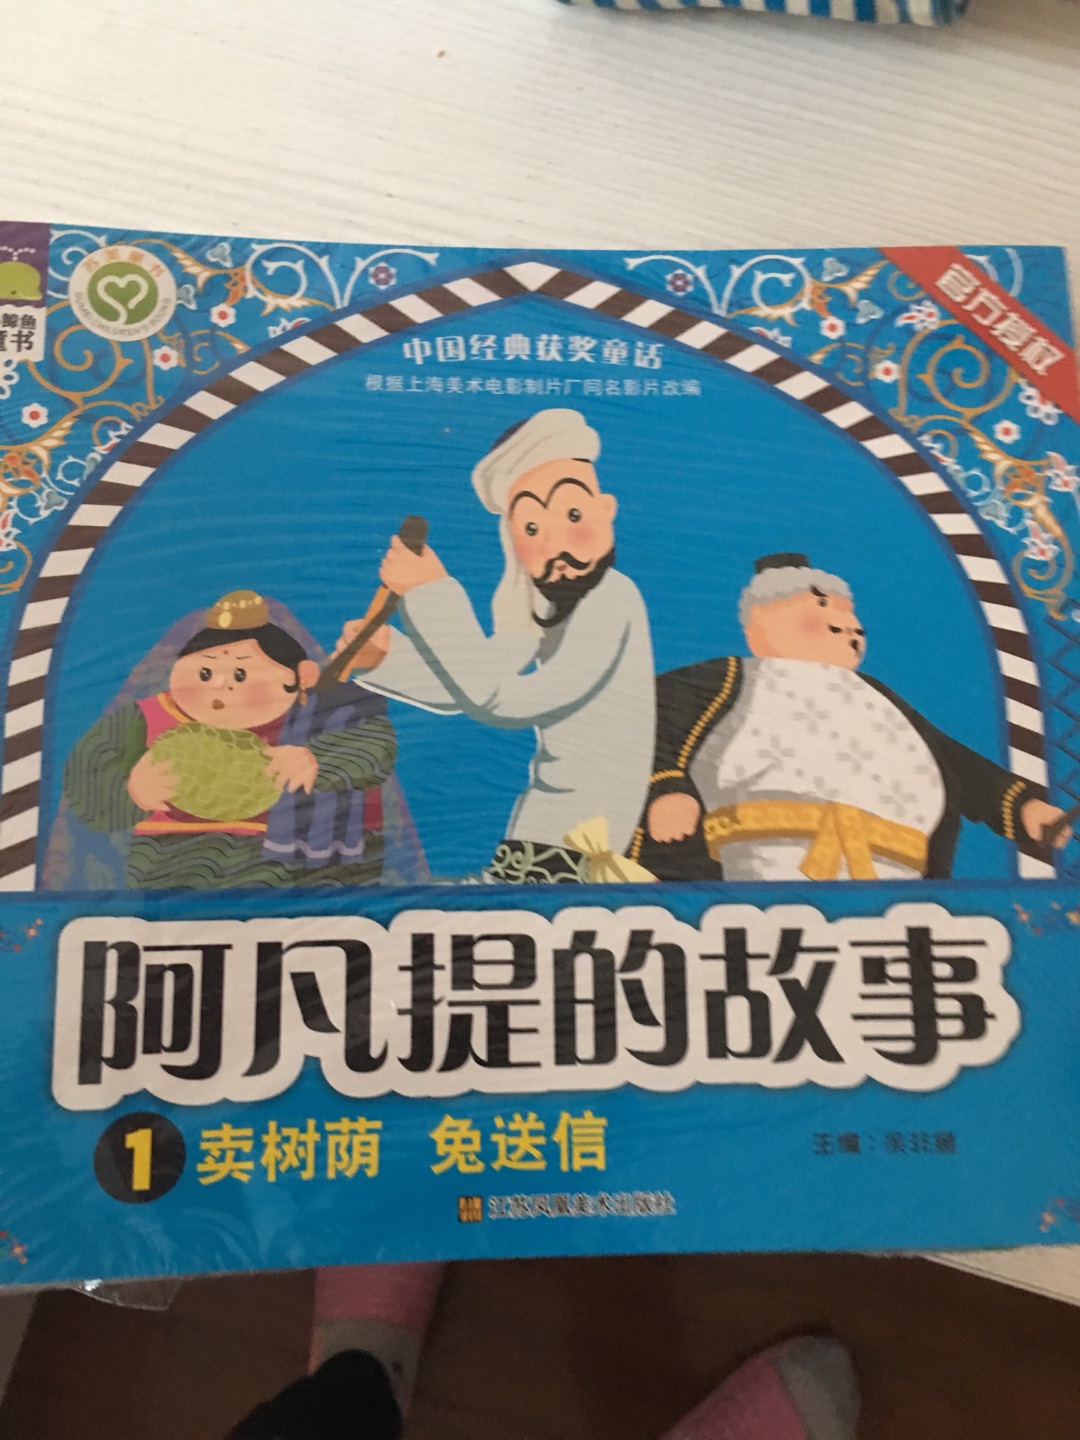 非常喜欢，经典故事都在，可以好好给宝贝讲故事，了解中国的古典文化故事传说了